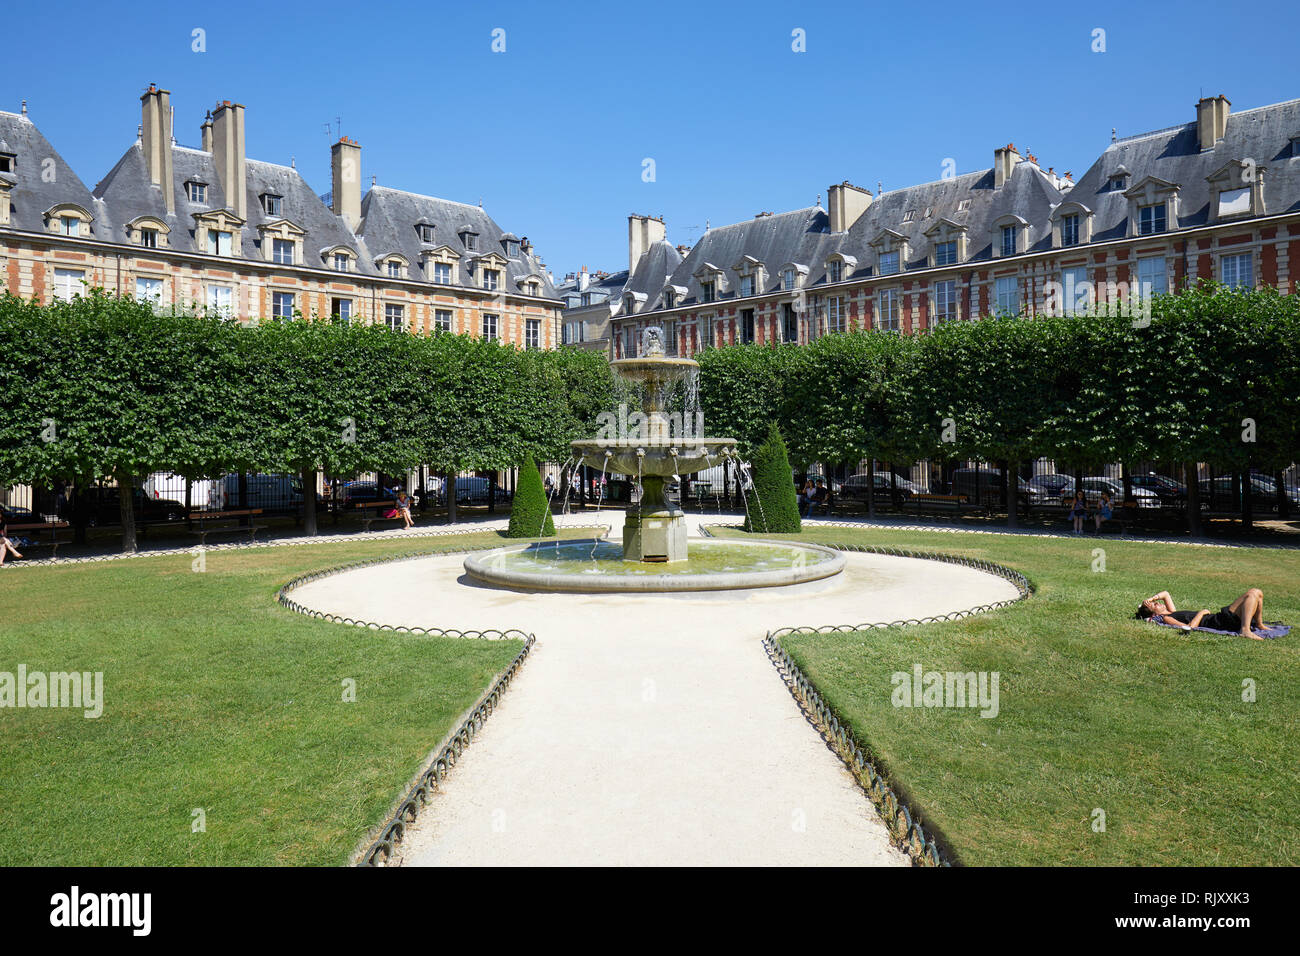 PARIS, FRANCE - Le 6 juillet 2018 : Place des Vosges avec les gens sur l'herbe et banc dans un beau jour d'été, ciel bleu clair à Paris Banque D'Images